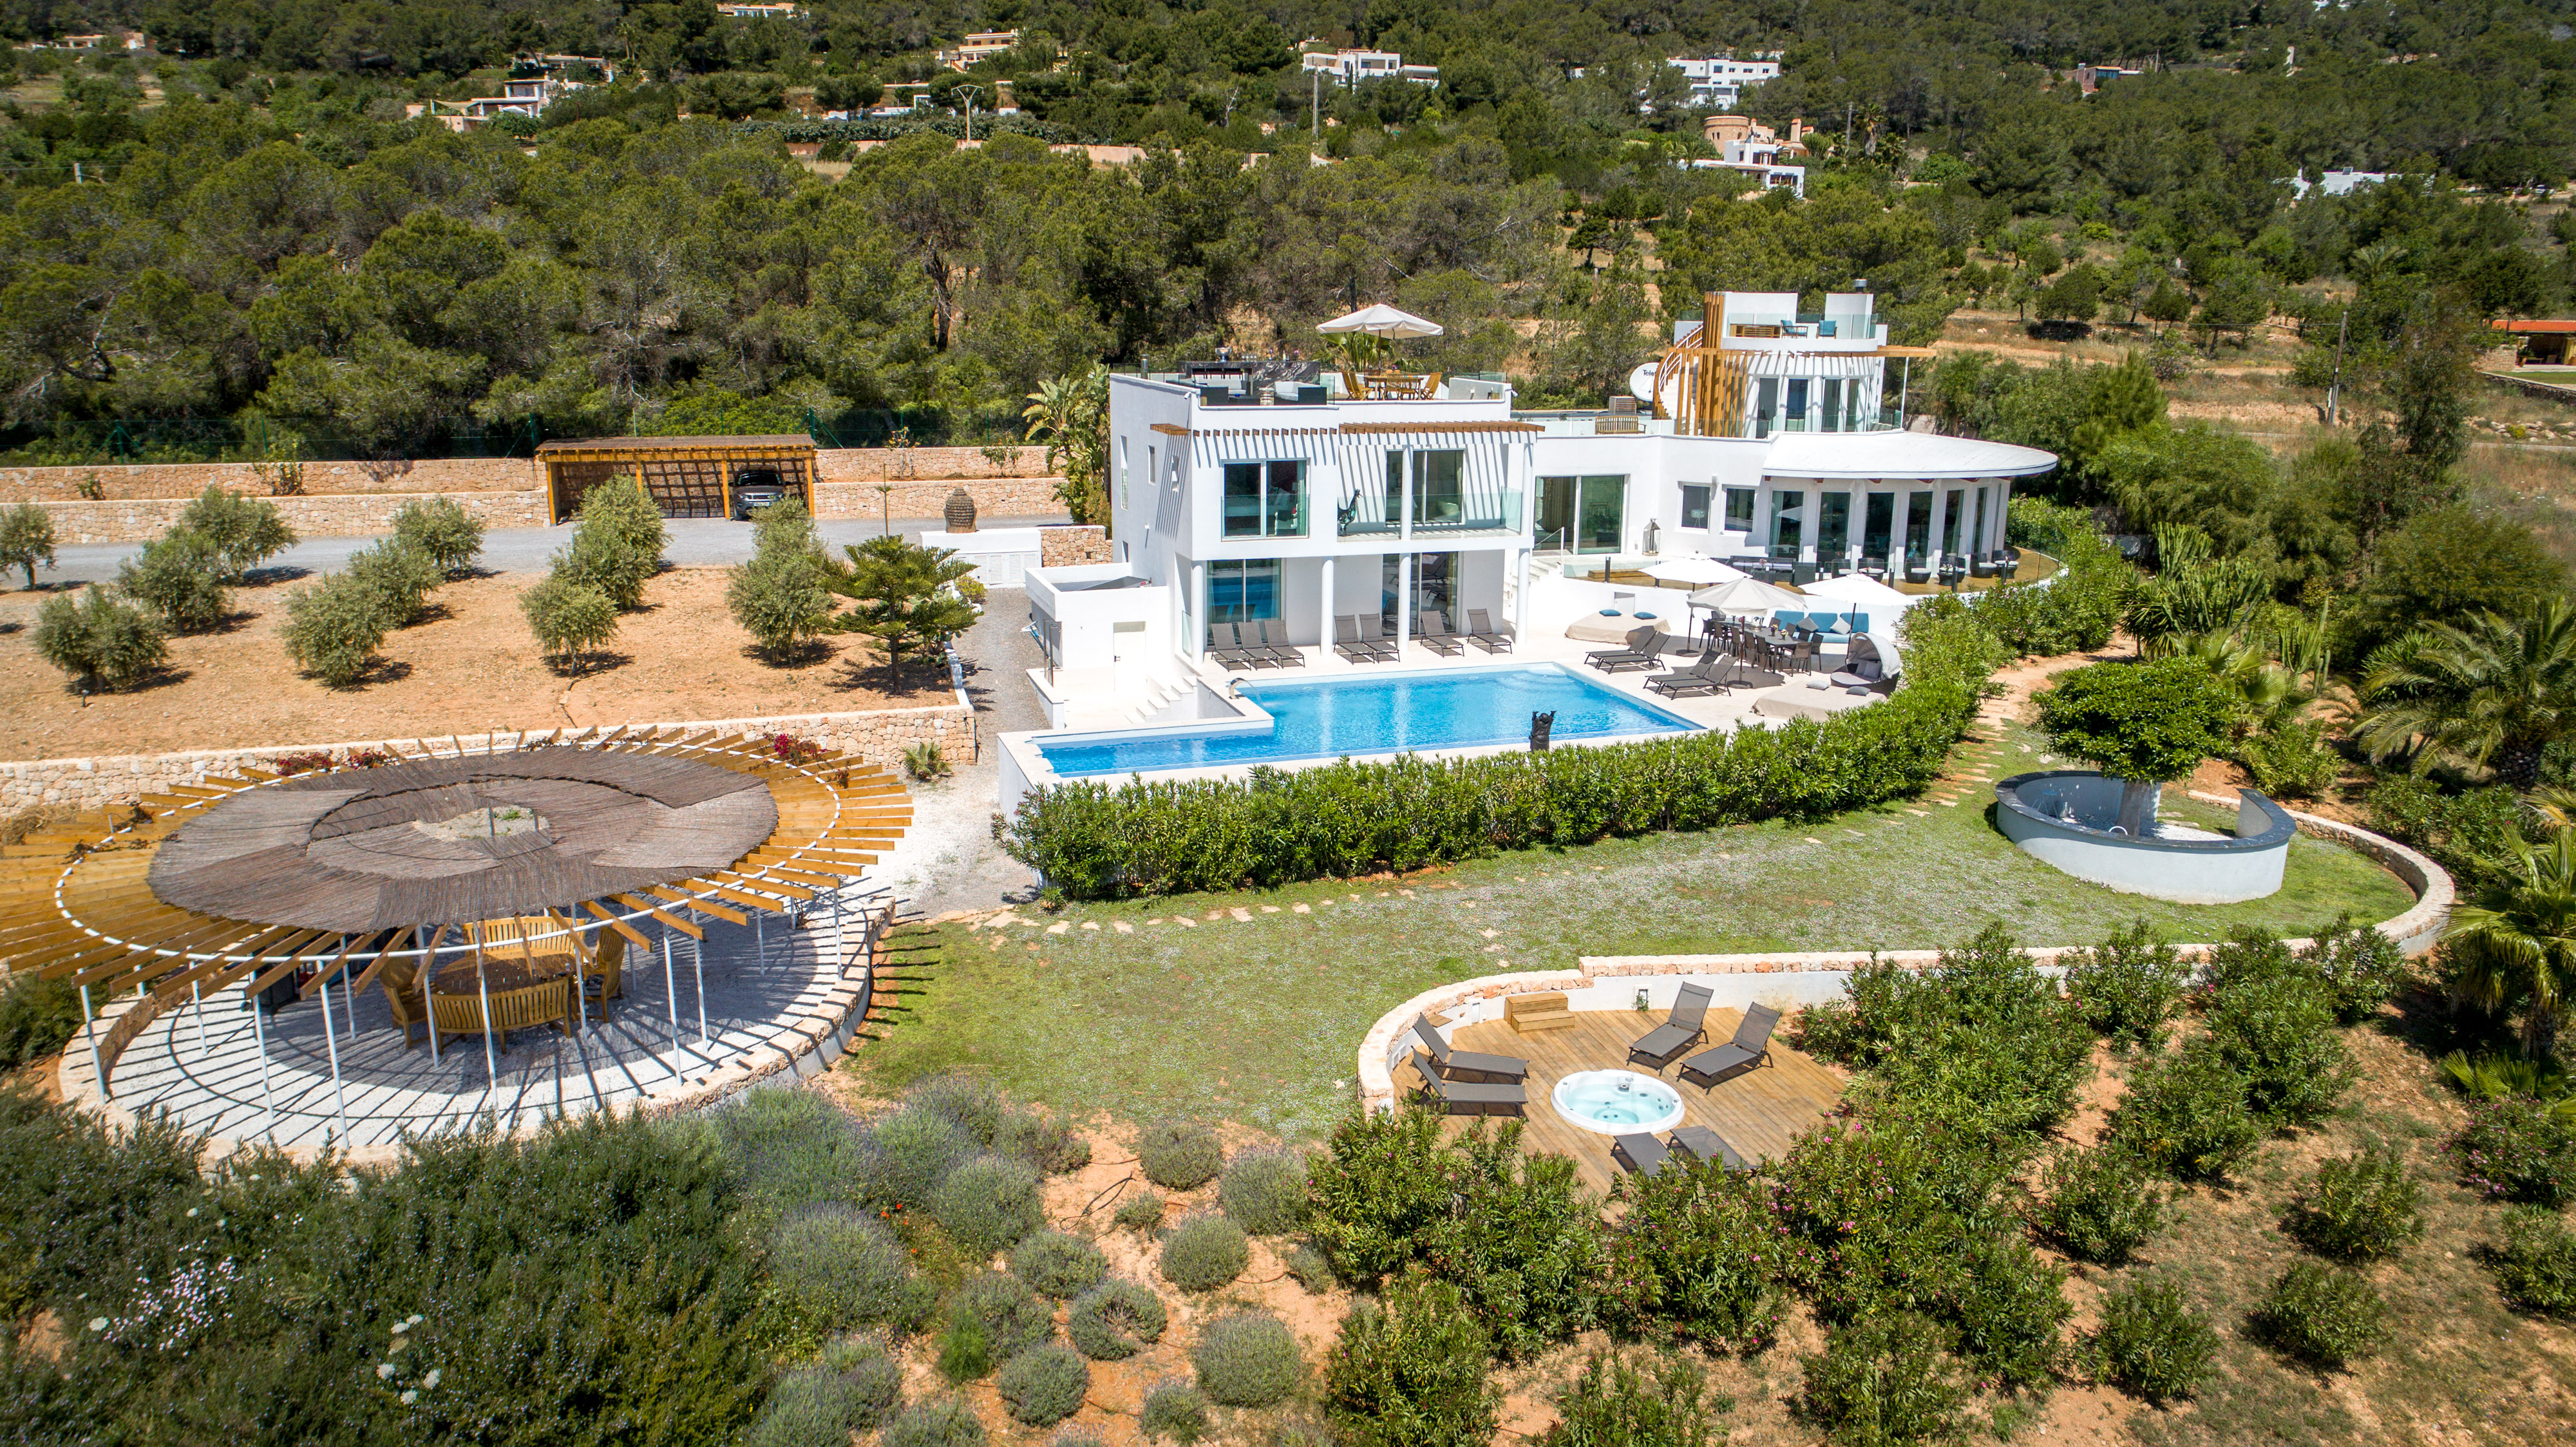 Alquile una villa en Ibiza en octubre y disfrute de una estancia relajada en la isla